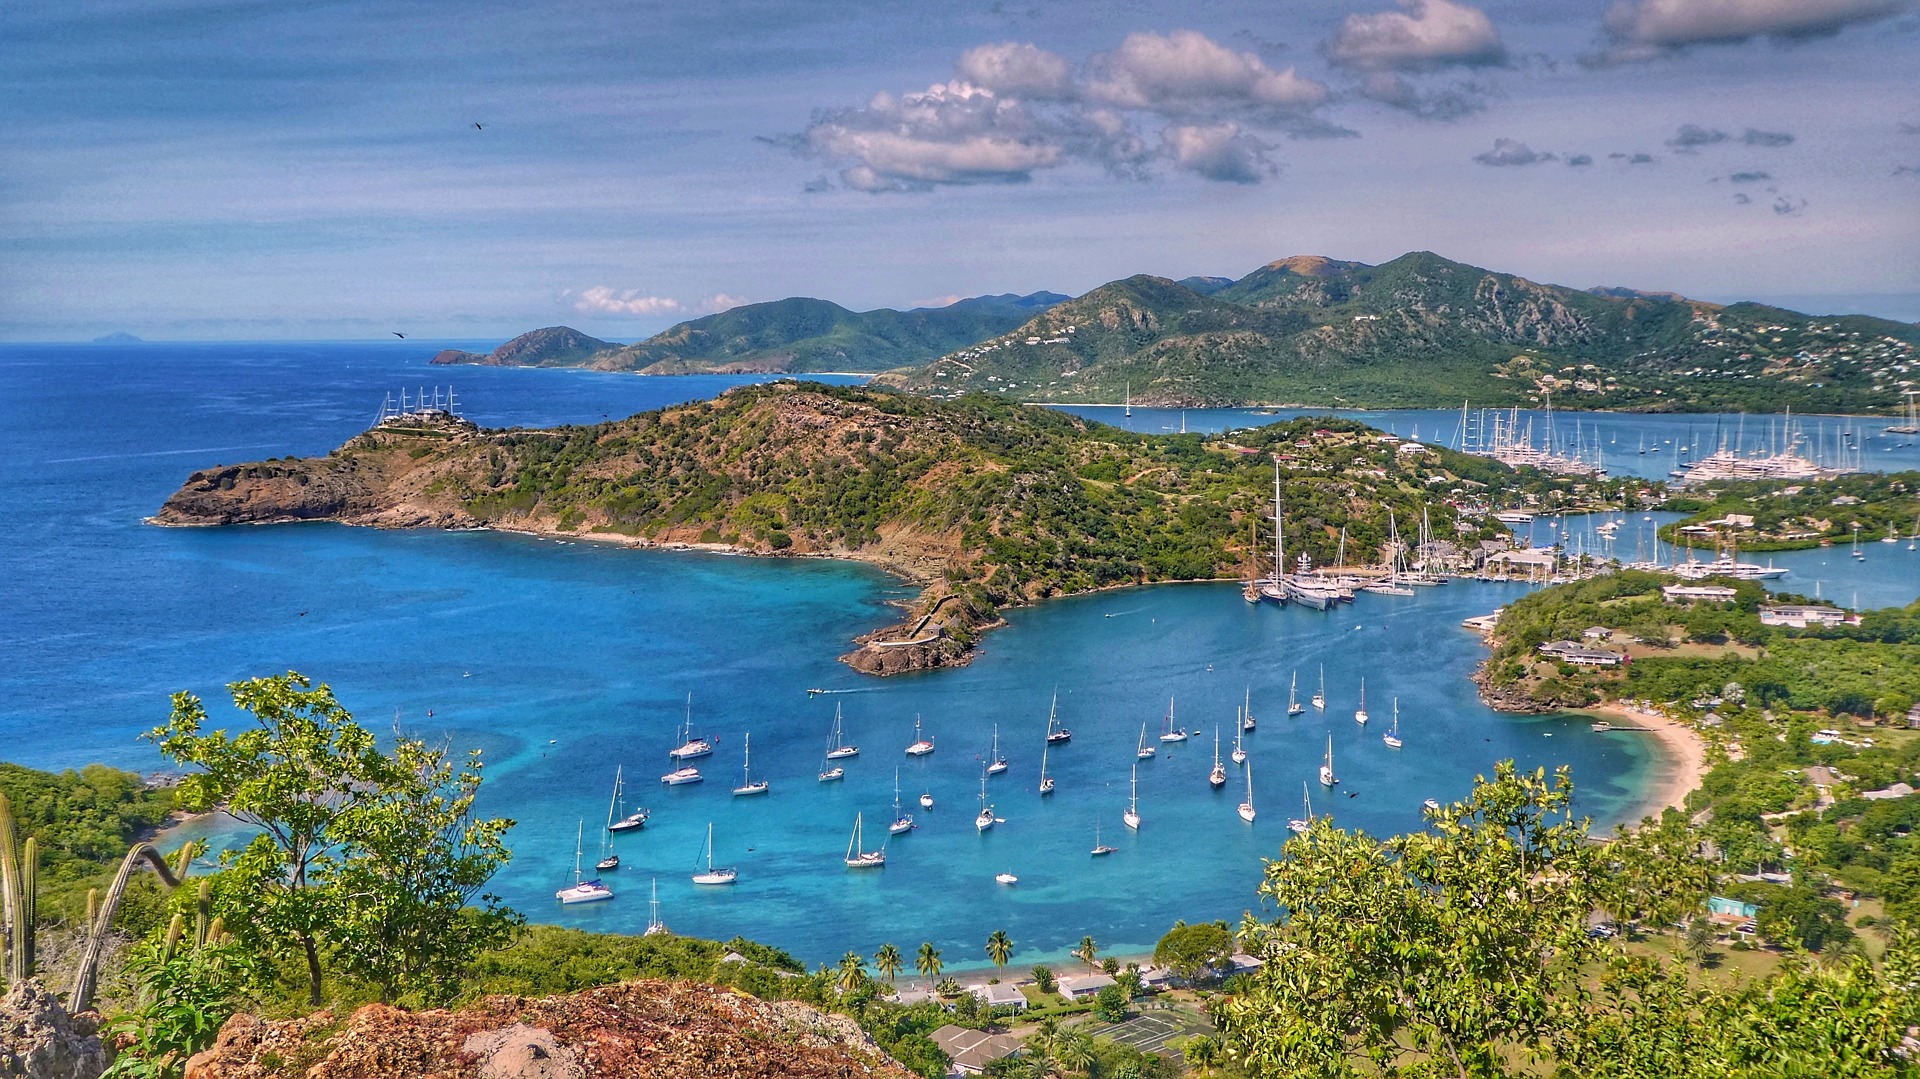 Legjobb helyek vitorlázáshoz: Antigua és Barbuda szigete